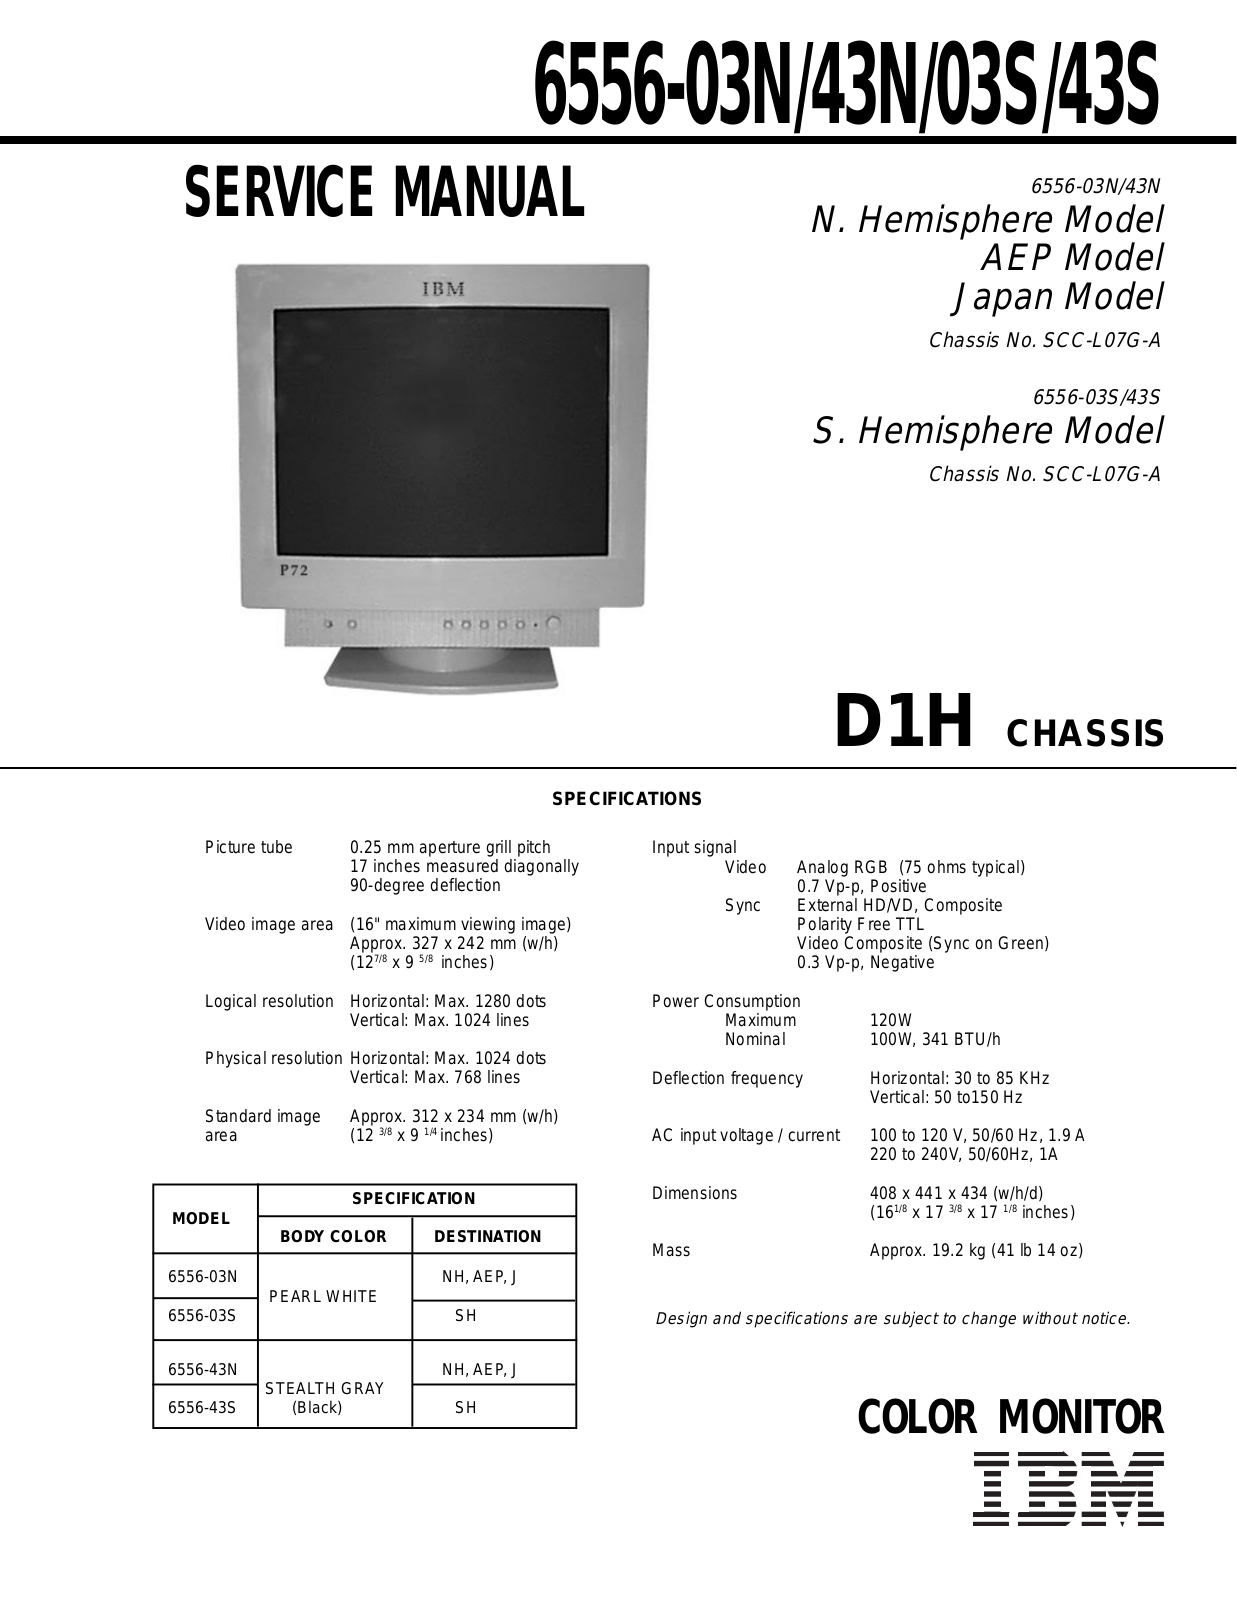 IBM 6556, 03N, 43N, 03S, 43S Service Manual